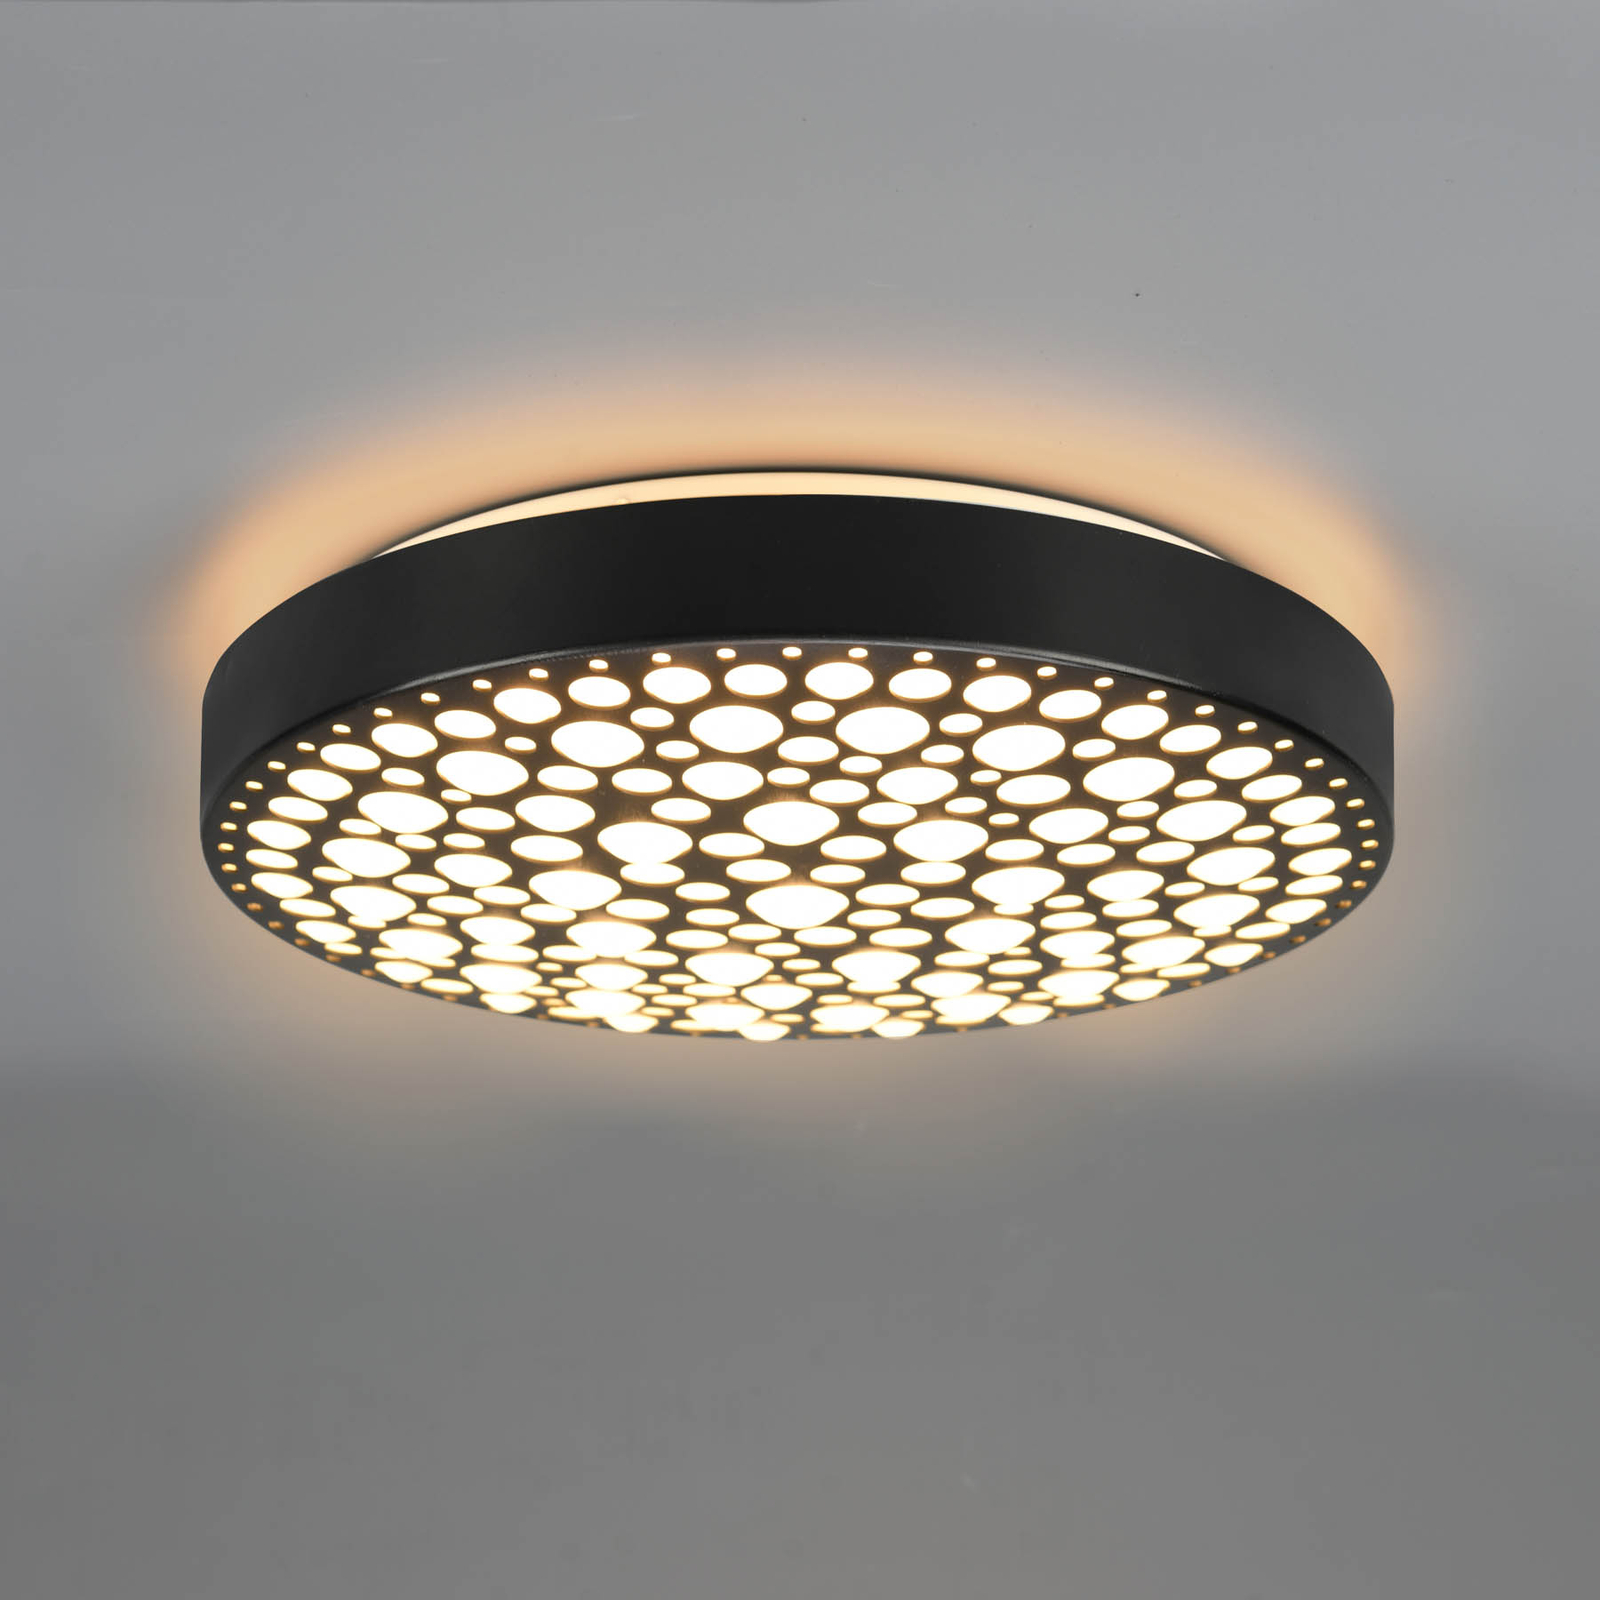 LED lubinis šviestuvas "Chizu" Ø 40,5 cm, reguliuojamas RGB, juodas